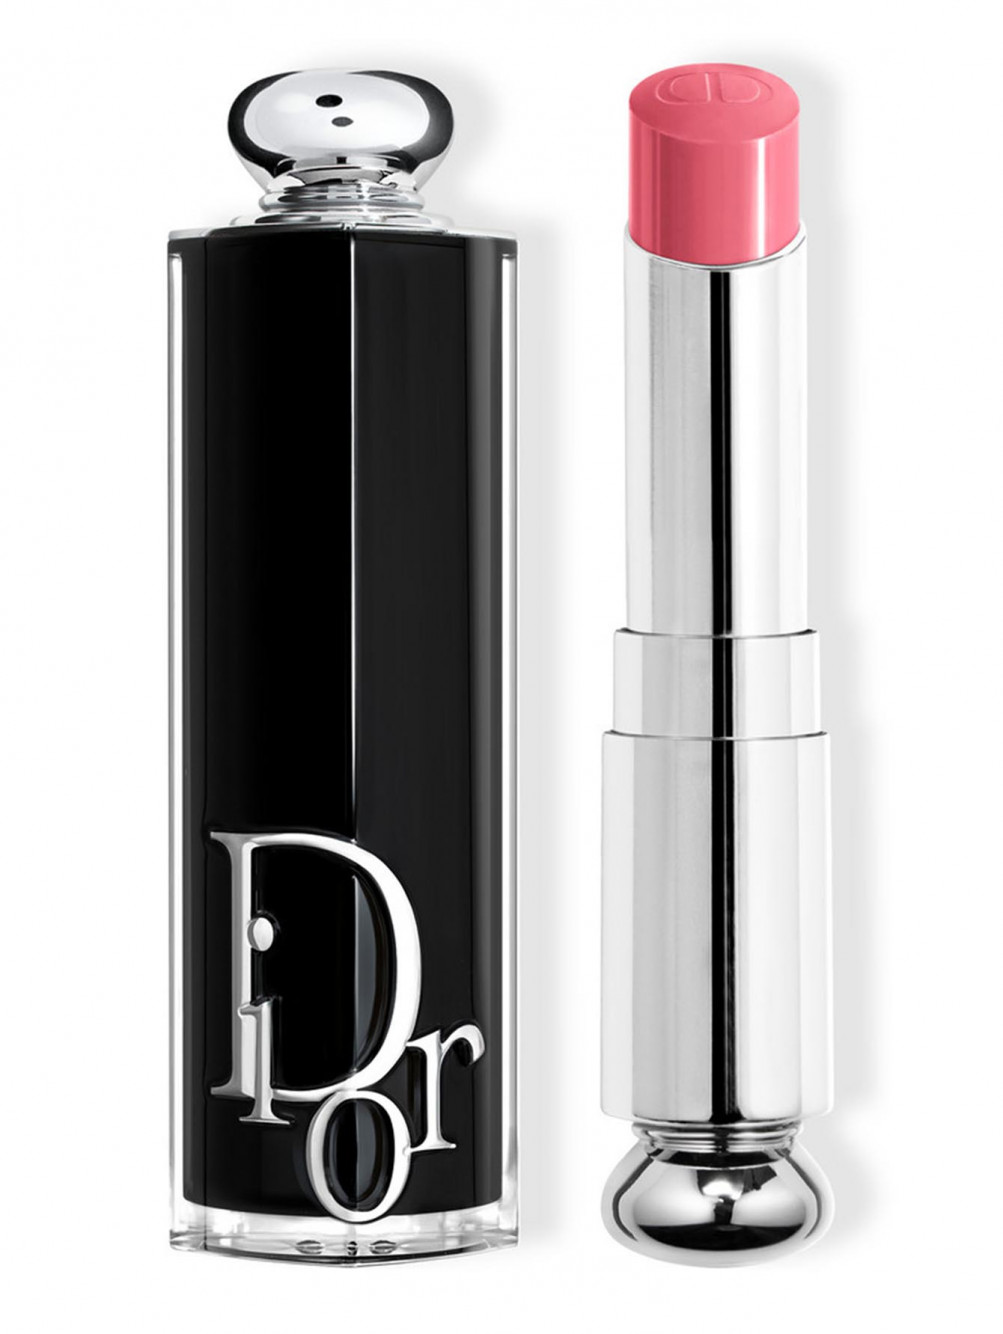 Помада для губ Dior Addict, Великолепная Роза 373, 3,2 г - Общий вид